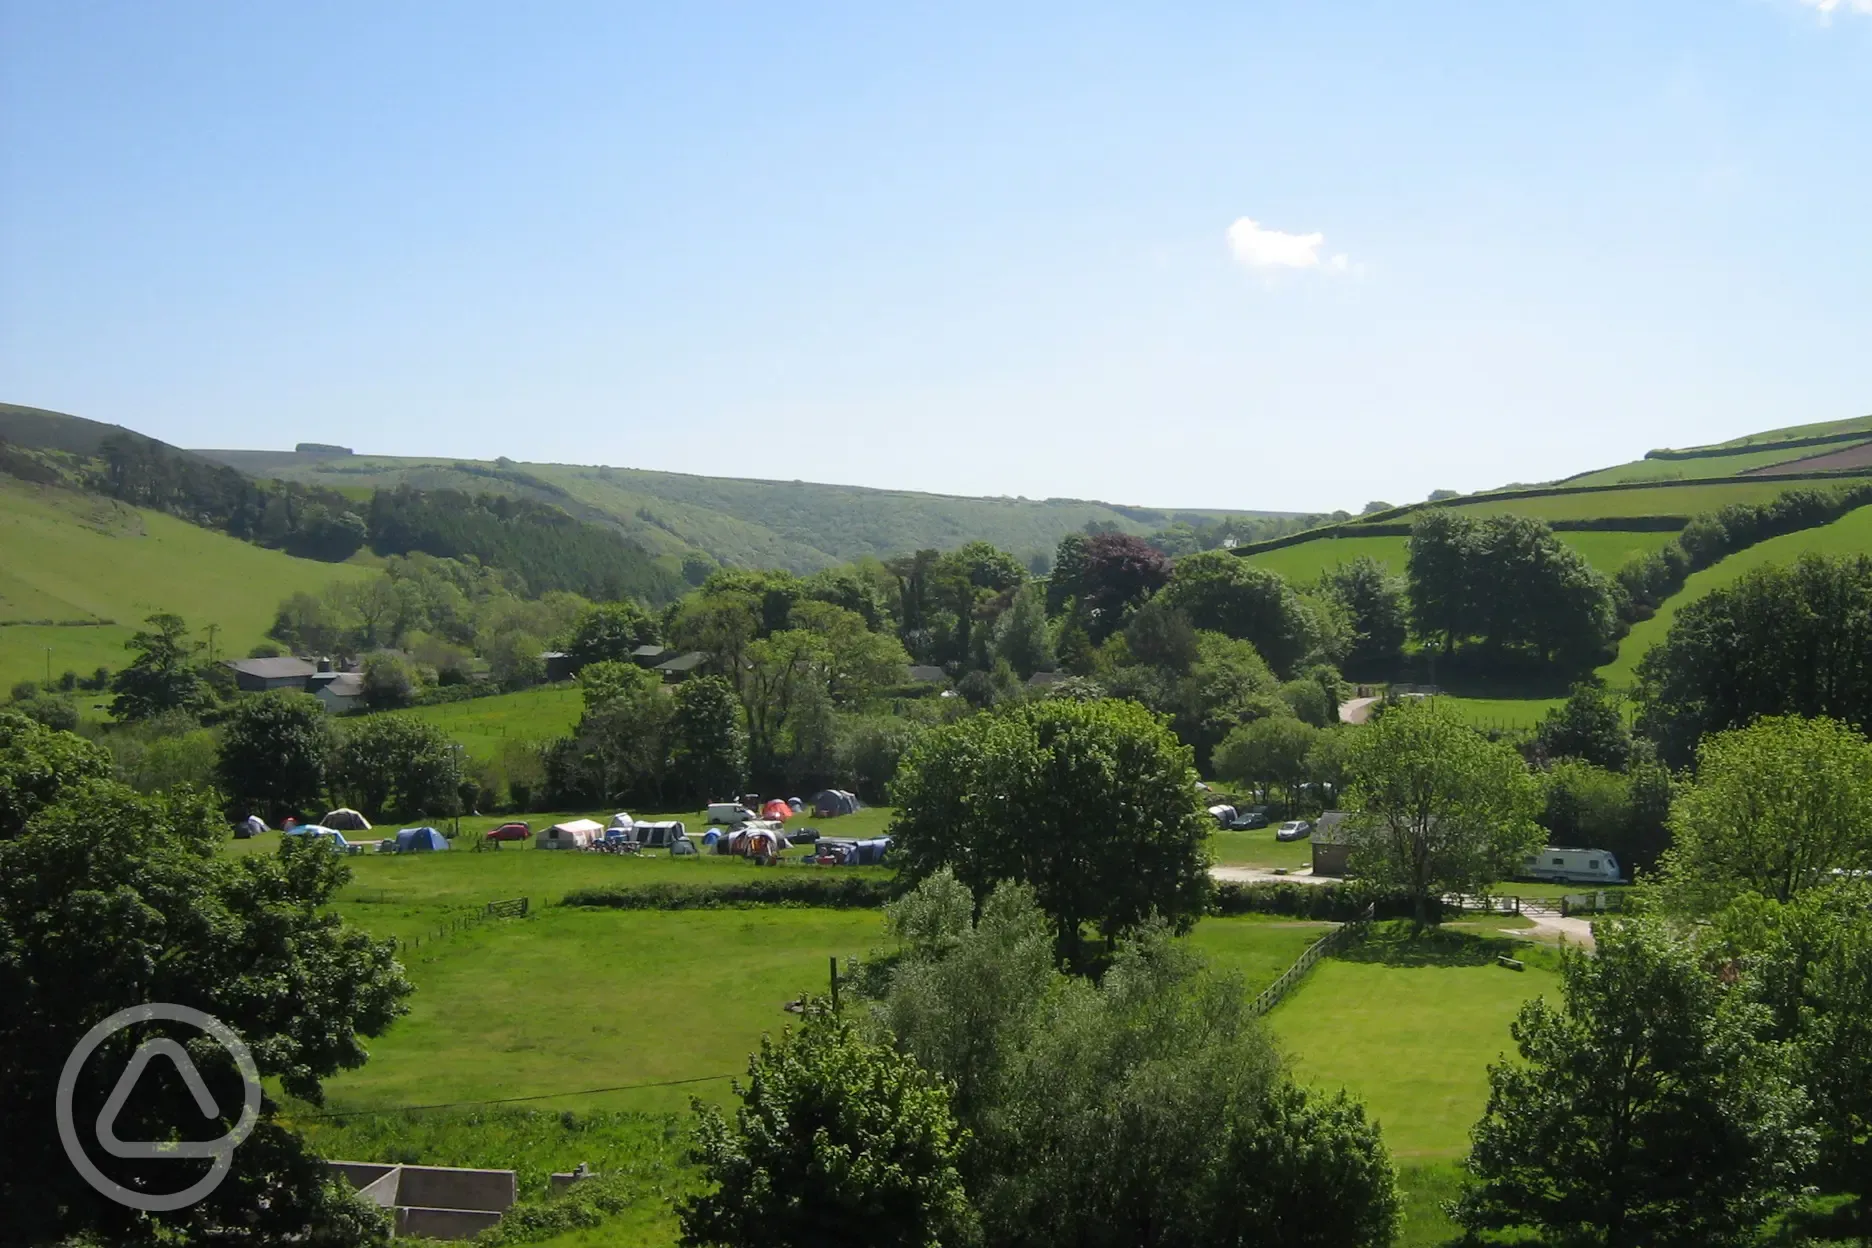 View of Doone Valley Campsite